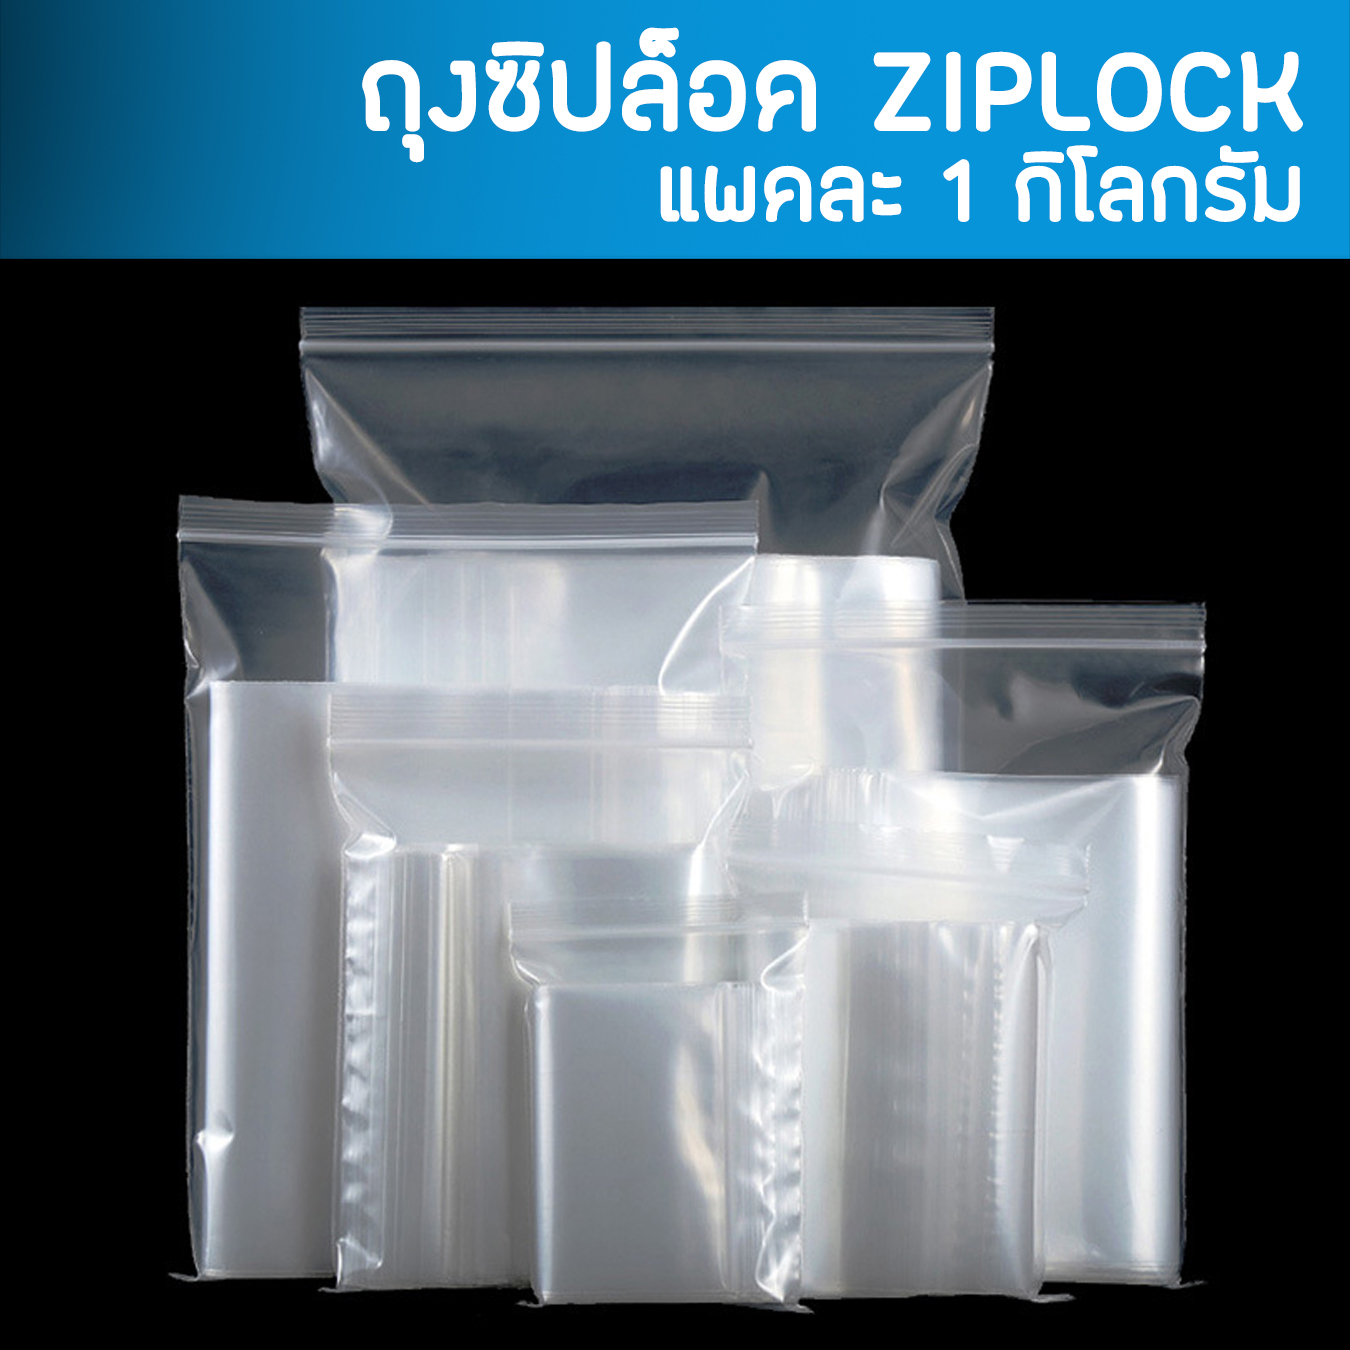 (แพ็ค 1กิโลกรัม) ถุงซิป ถุงซิปล็อค ziplock ถุงพลาสติก รุ่นหนา Food Grade ถุงซิปใส่ยา ถุงซิปใส่อาหาร